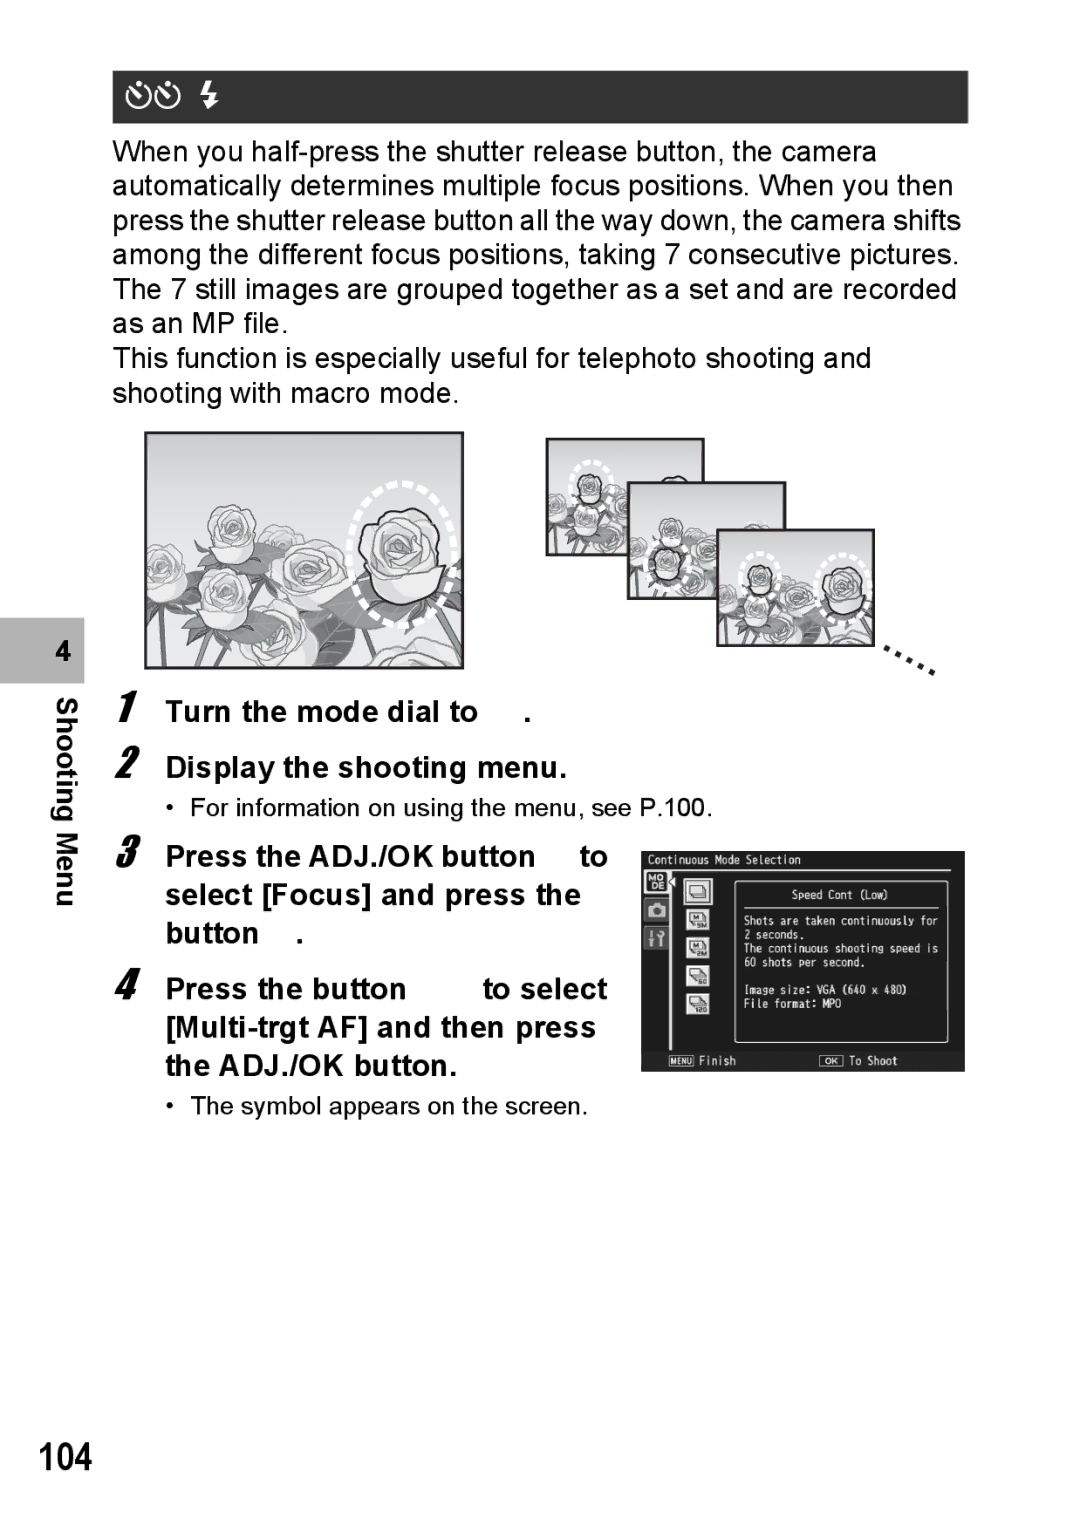 Samsung CX2 manual 104, Multi-Target AF 